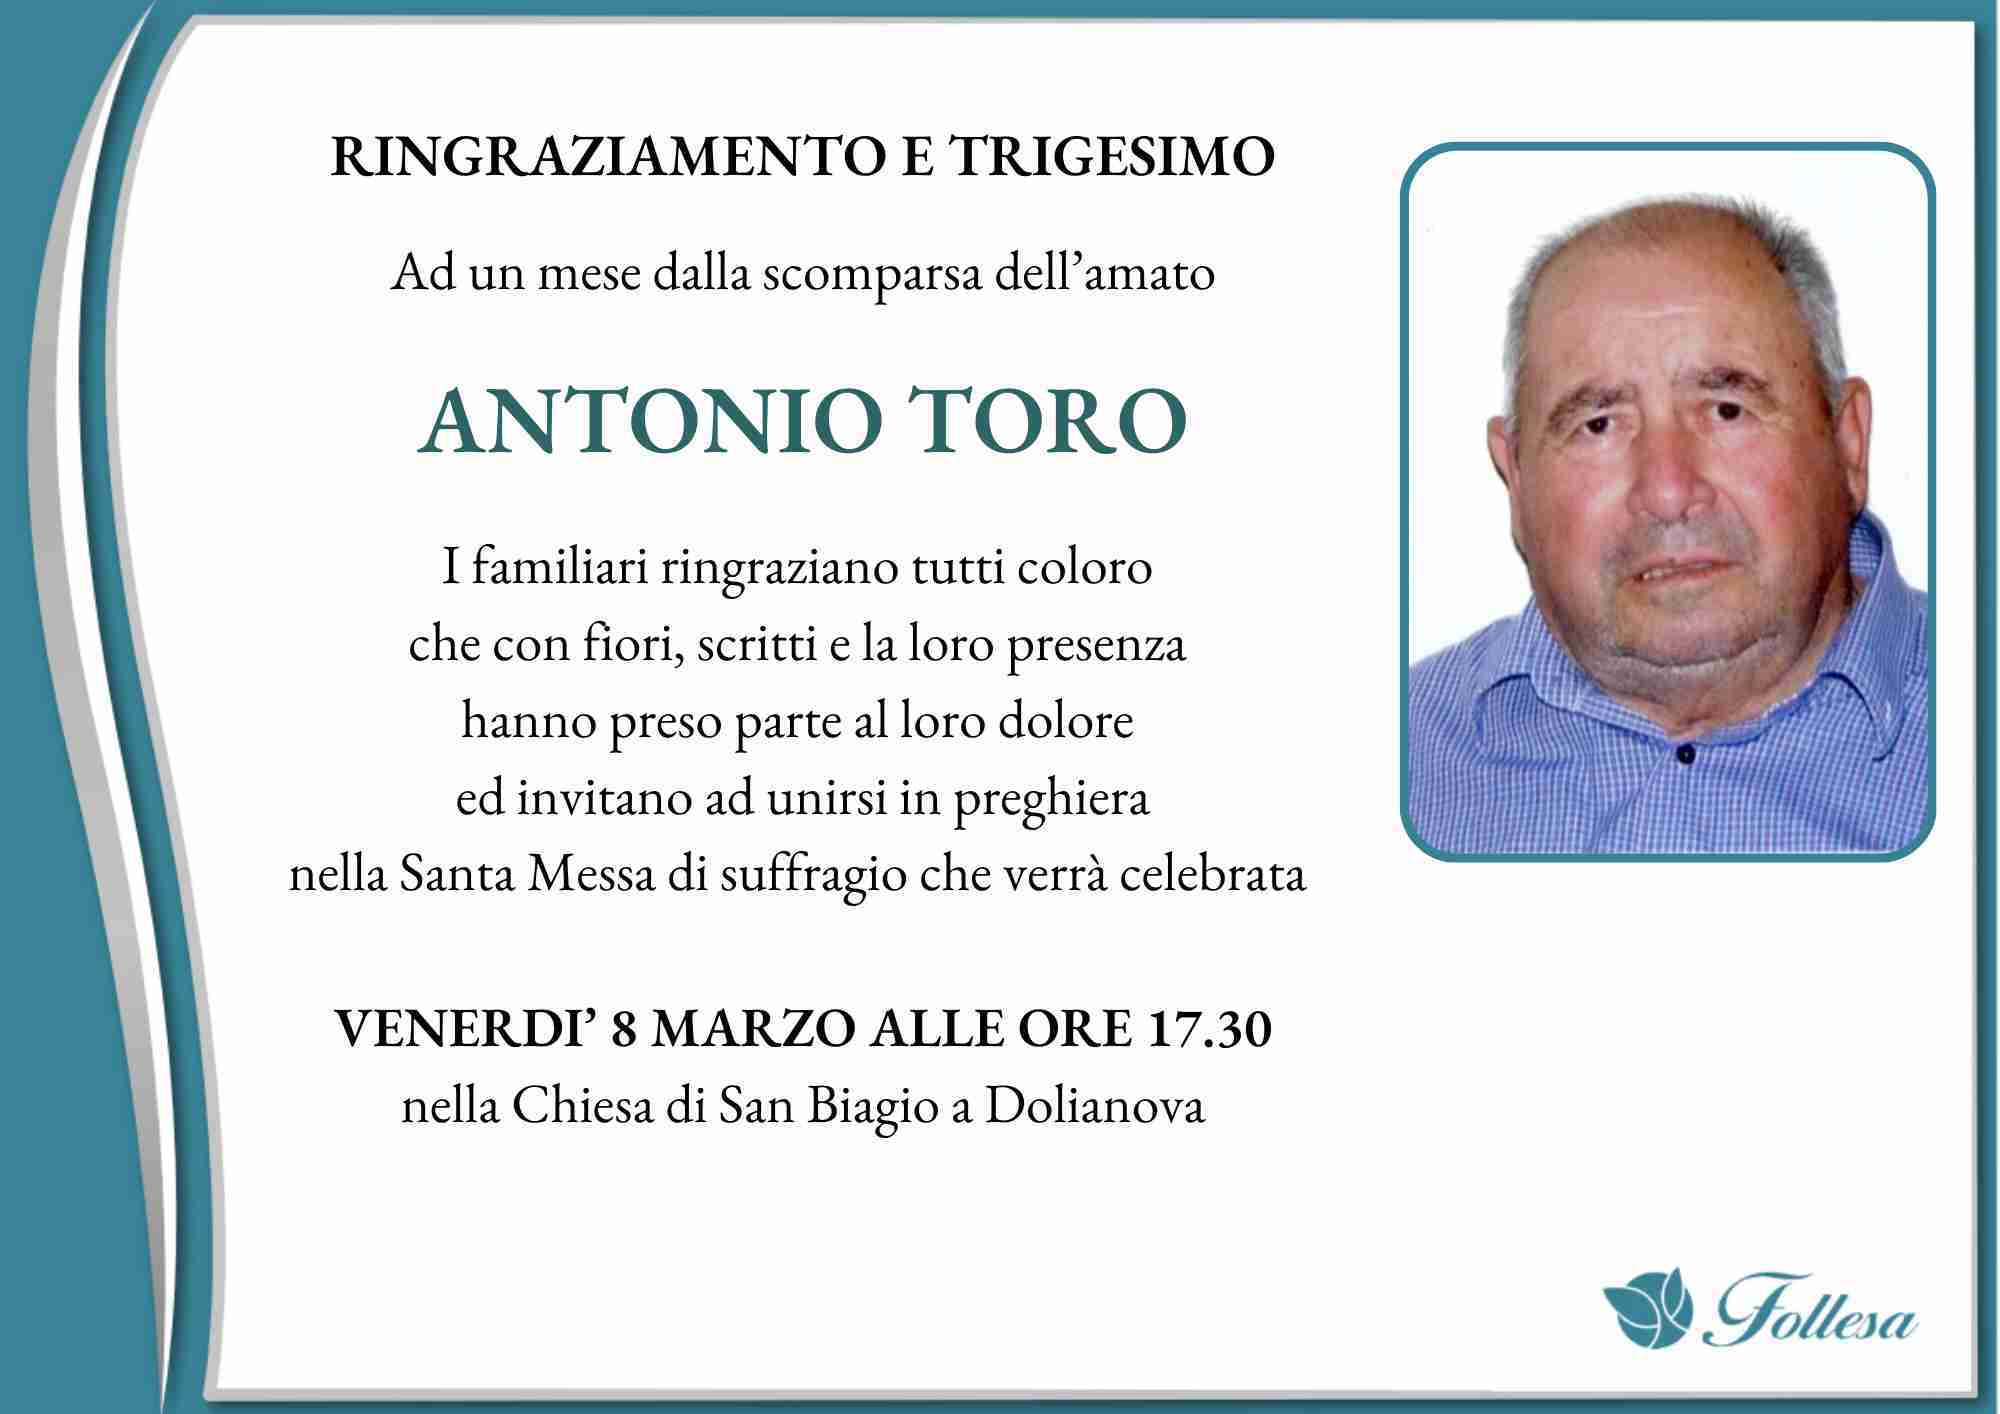 Antonio Toro